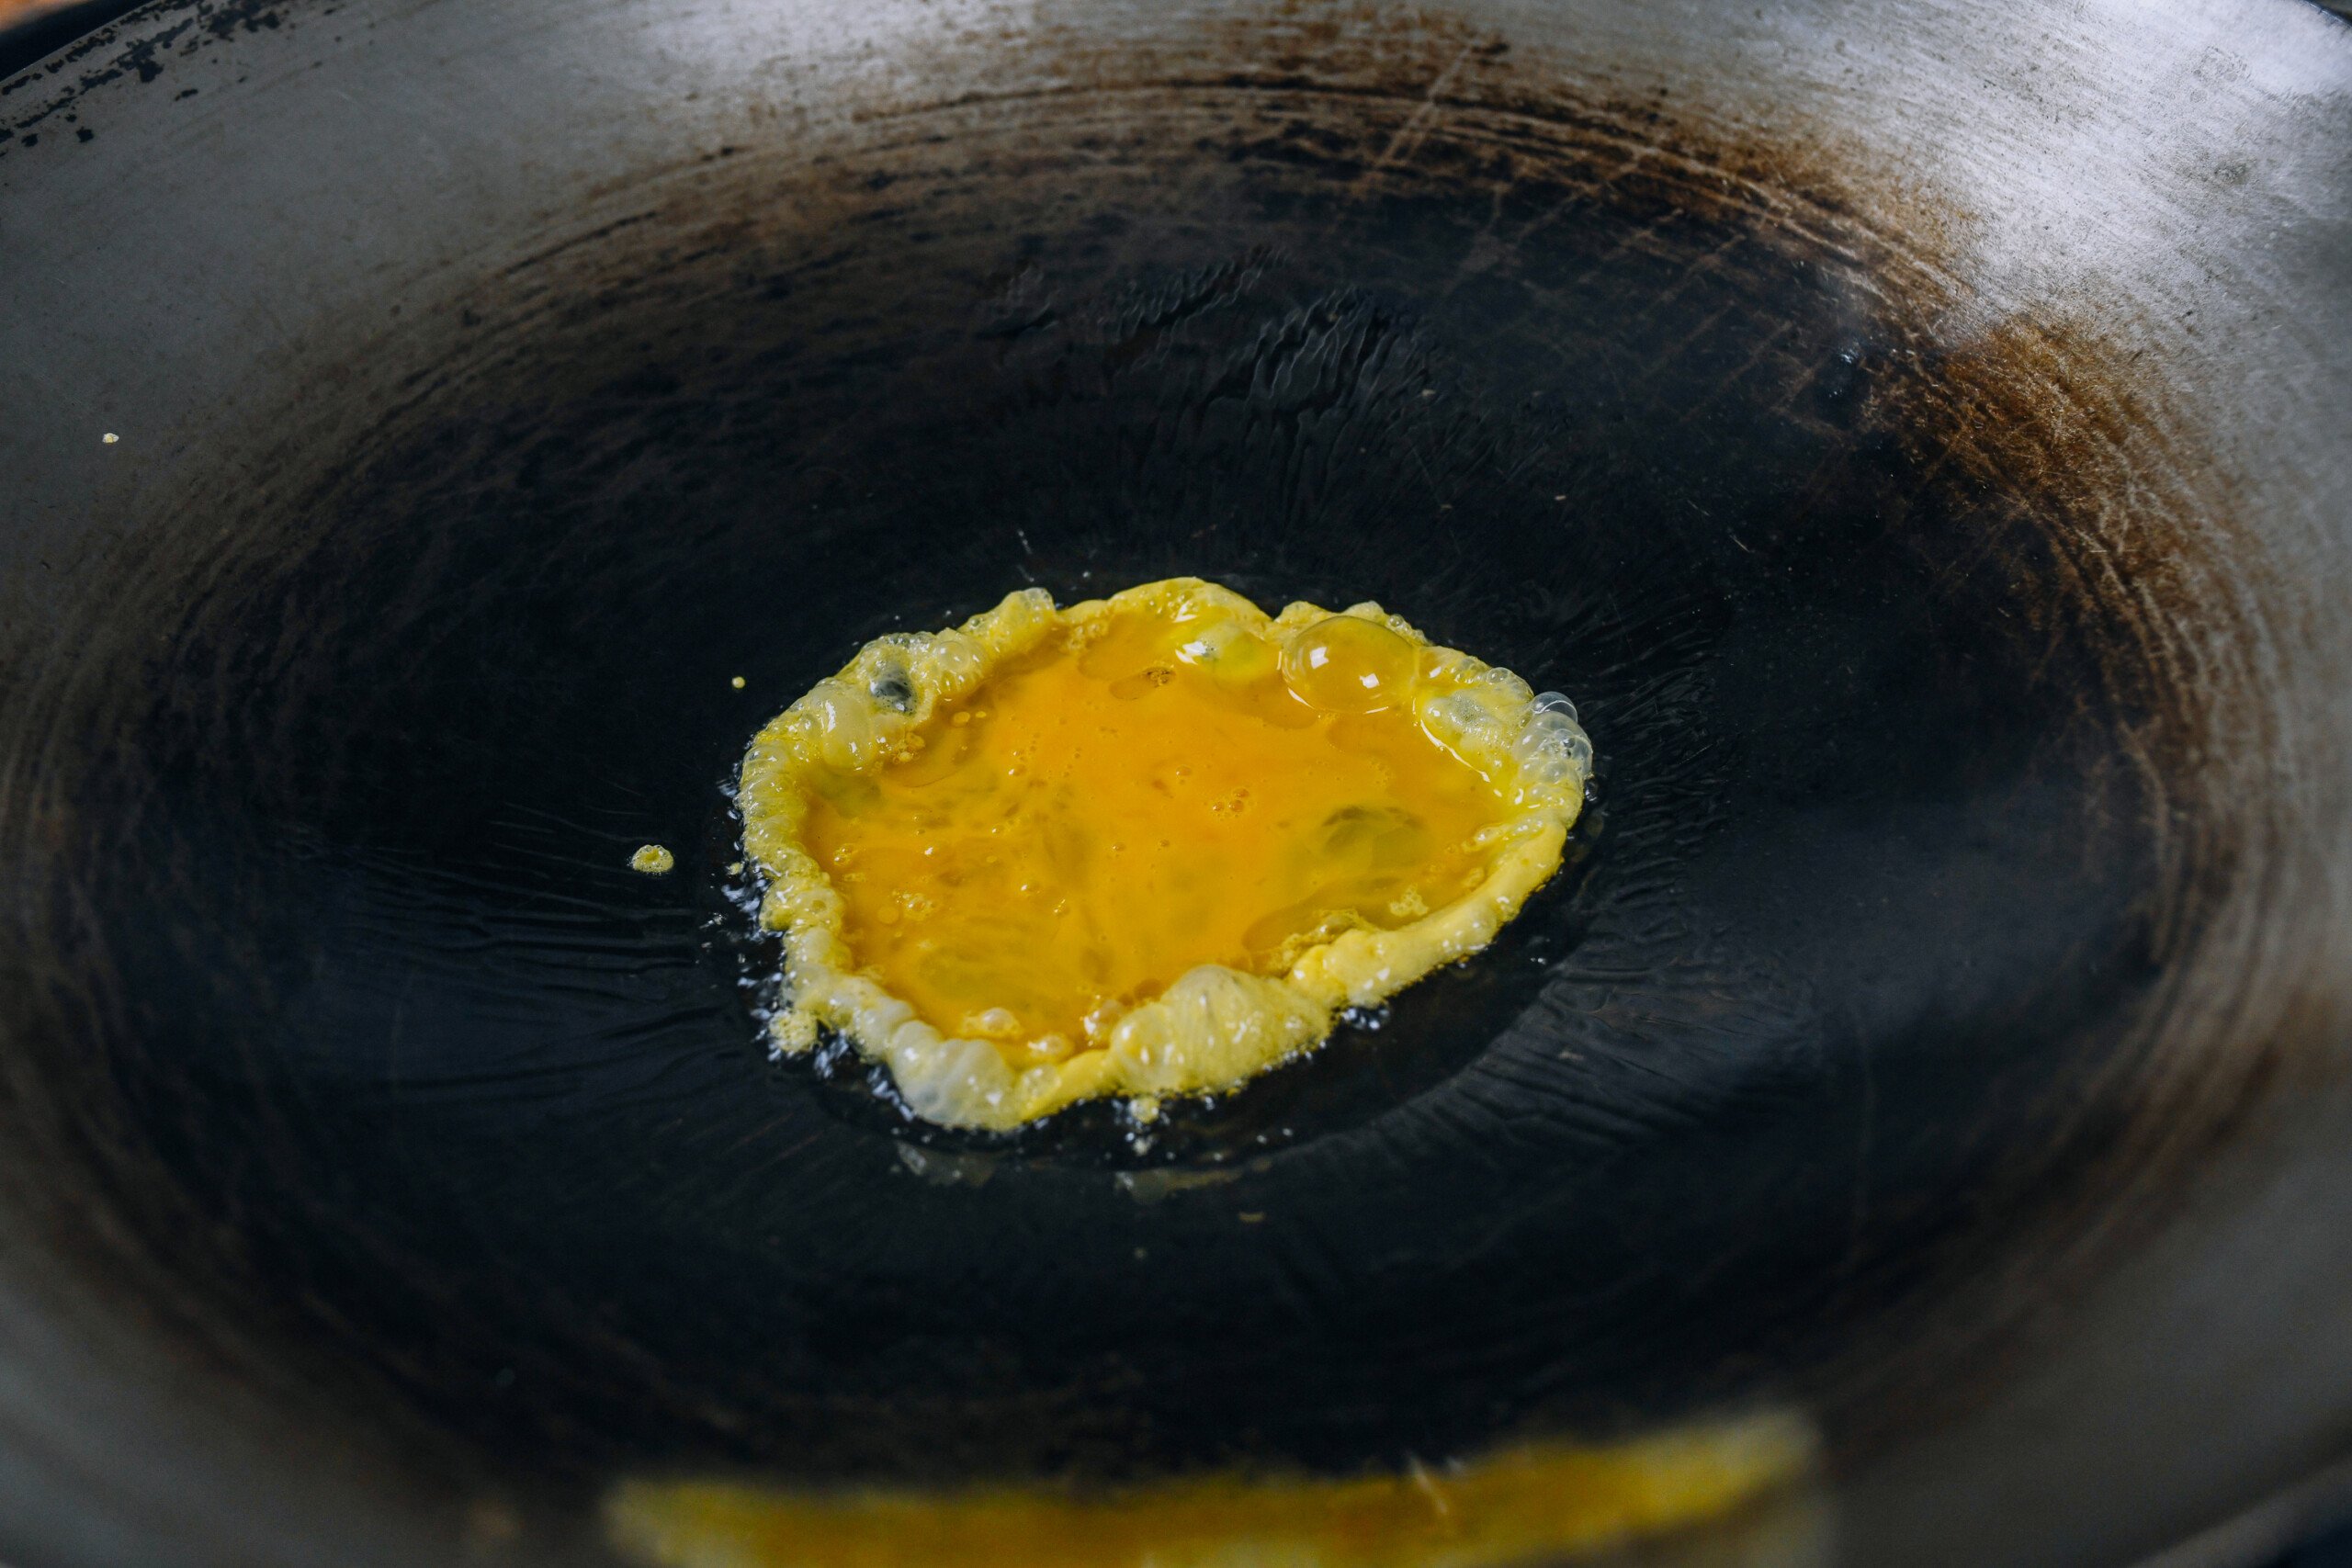 scrambling eggs in a wok